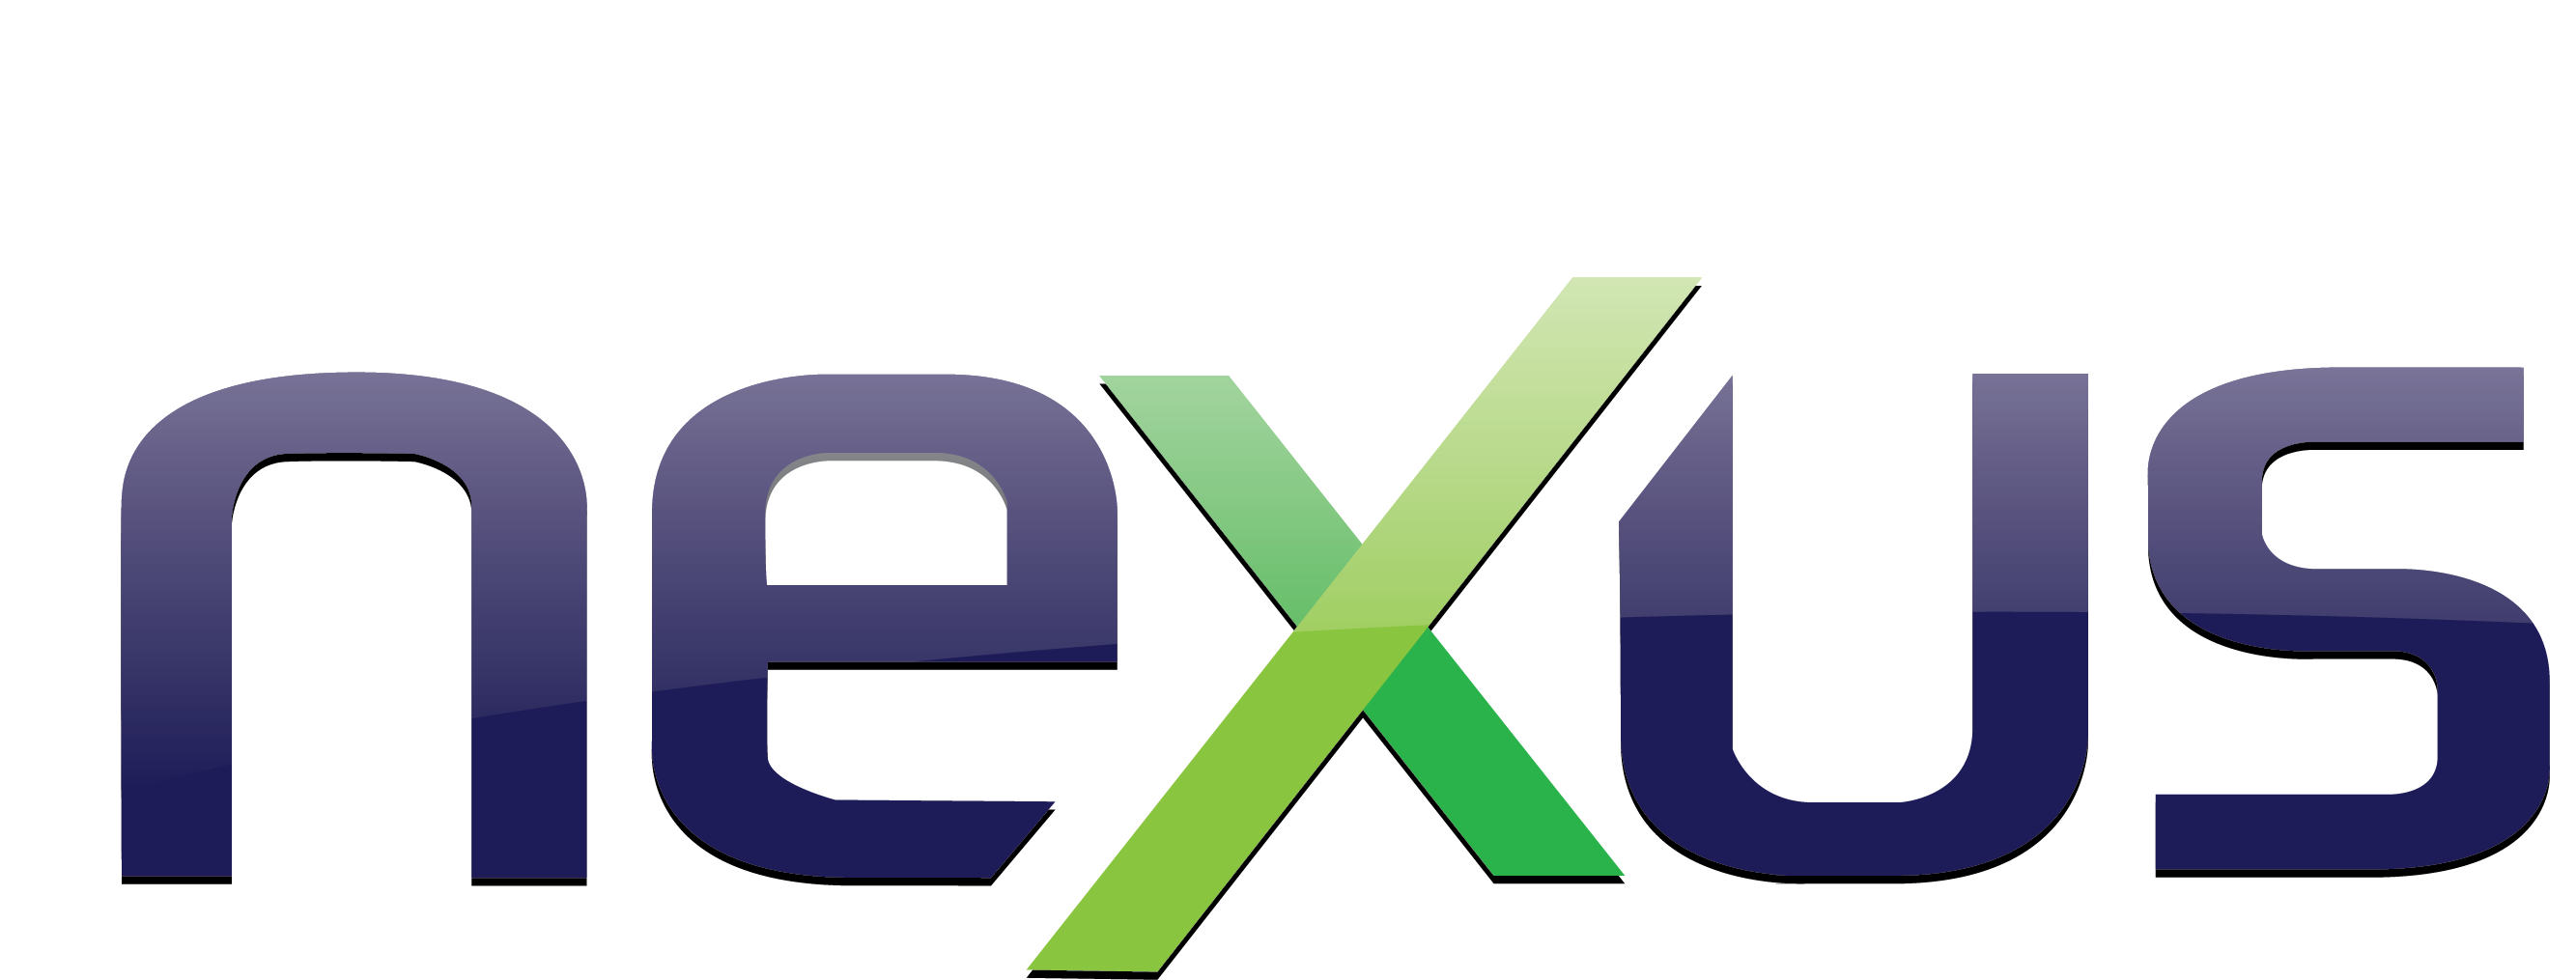 Nexus logo Royalty Free Vector Image - VectorStock